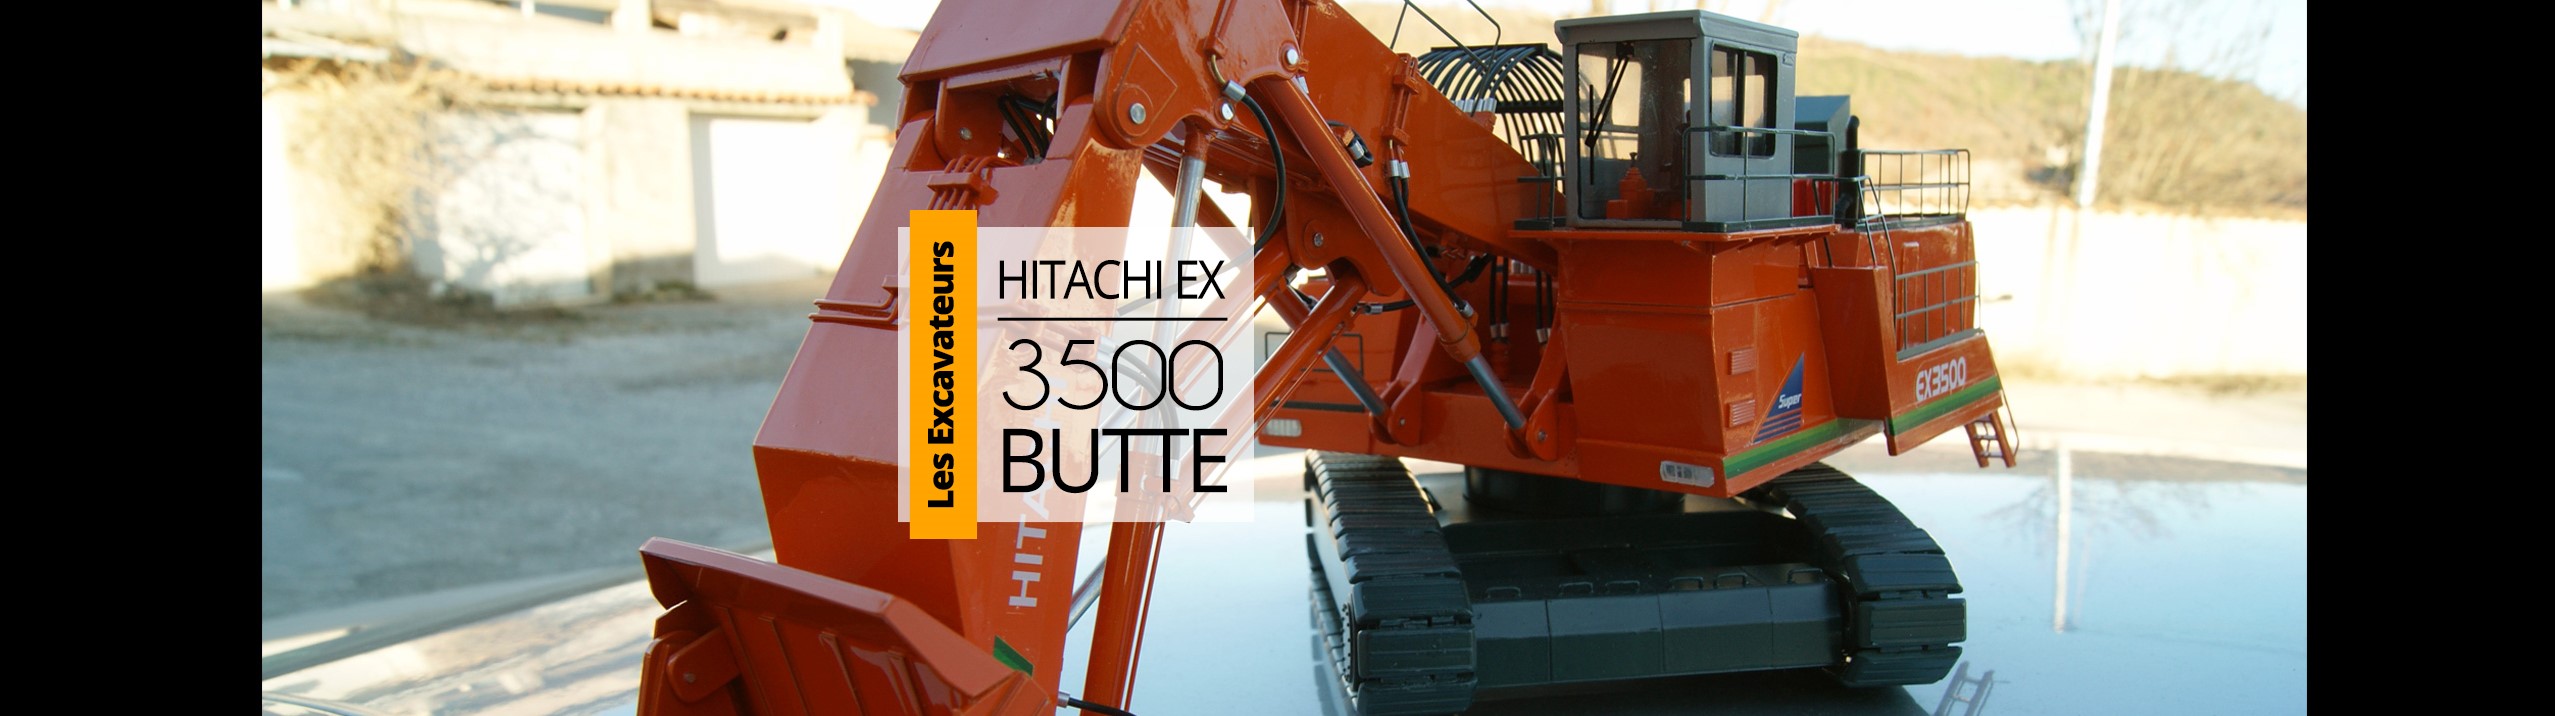 Hitachiex3500 Butte - les miniatures du faubourg